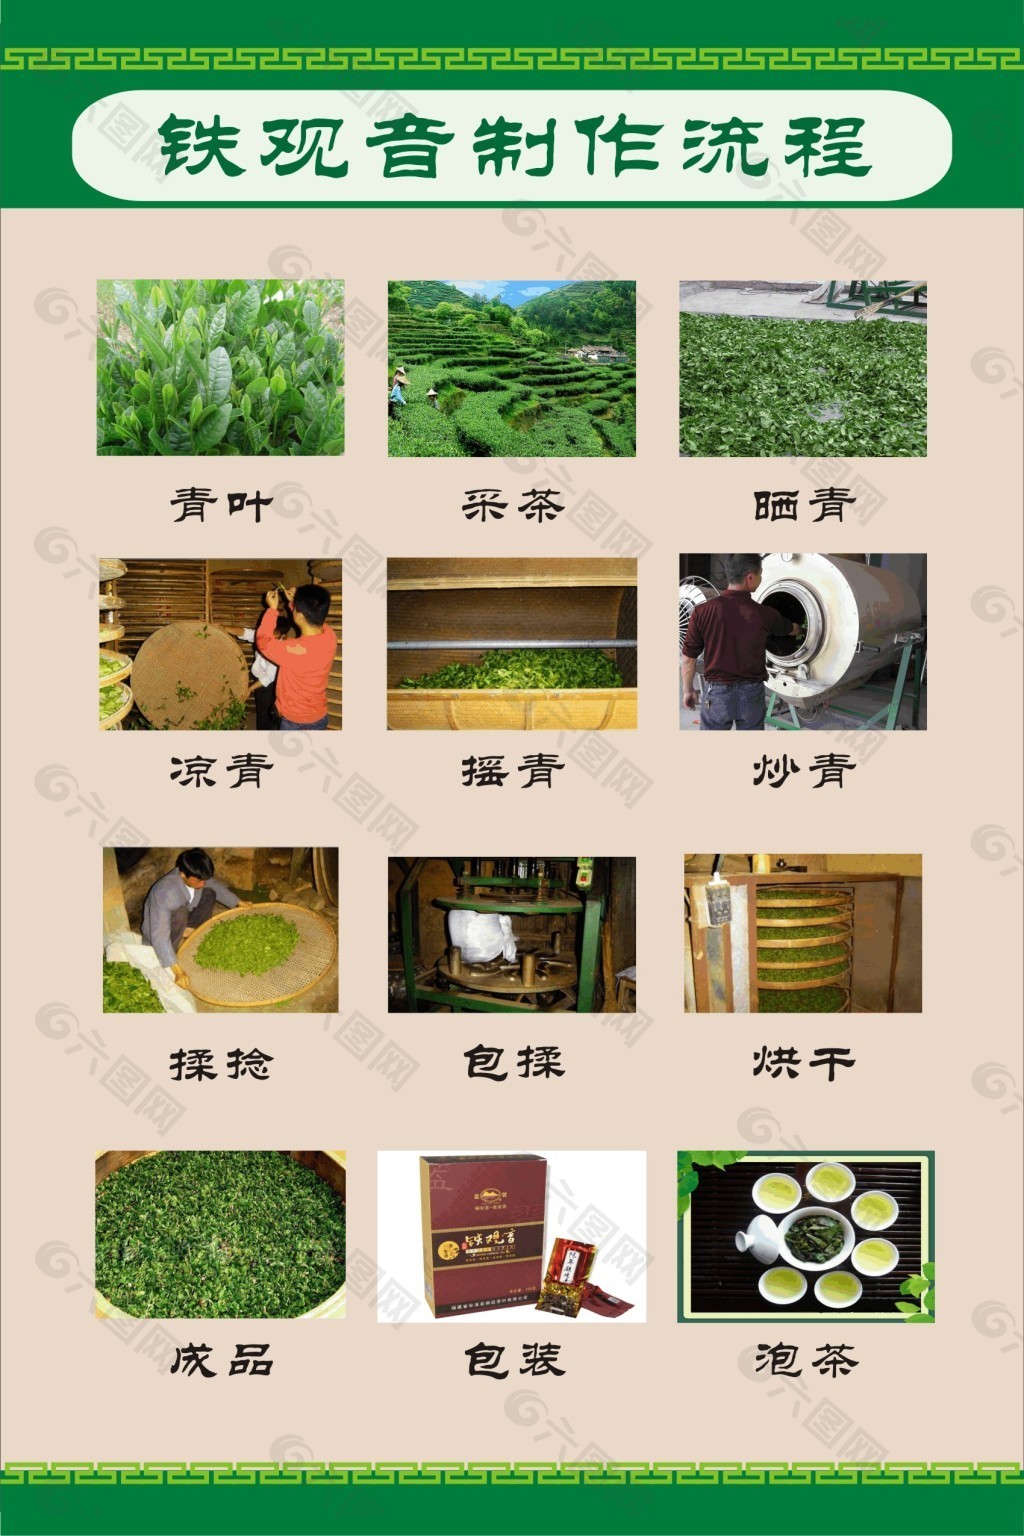 绿茶制作工艺流程图片